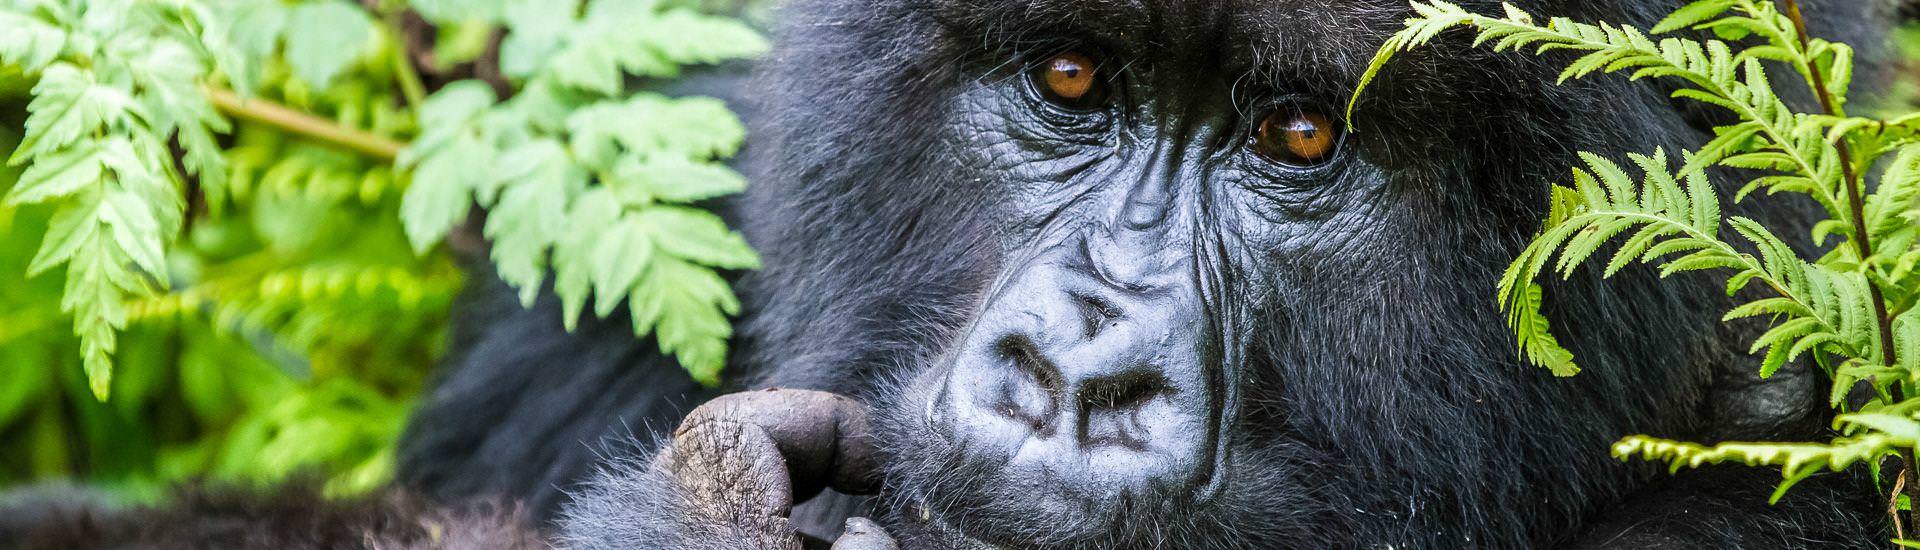 Portrait eines Gorillas | 